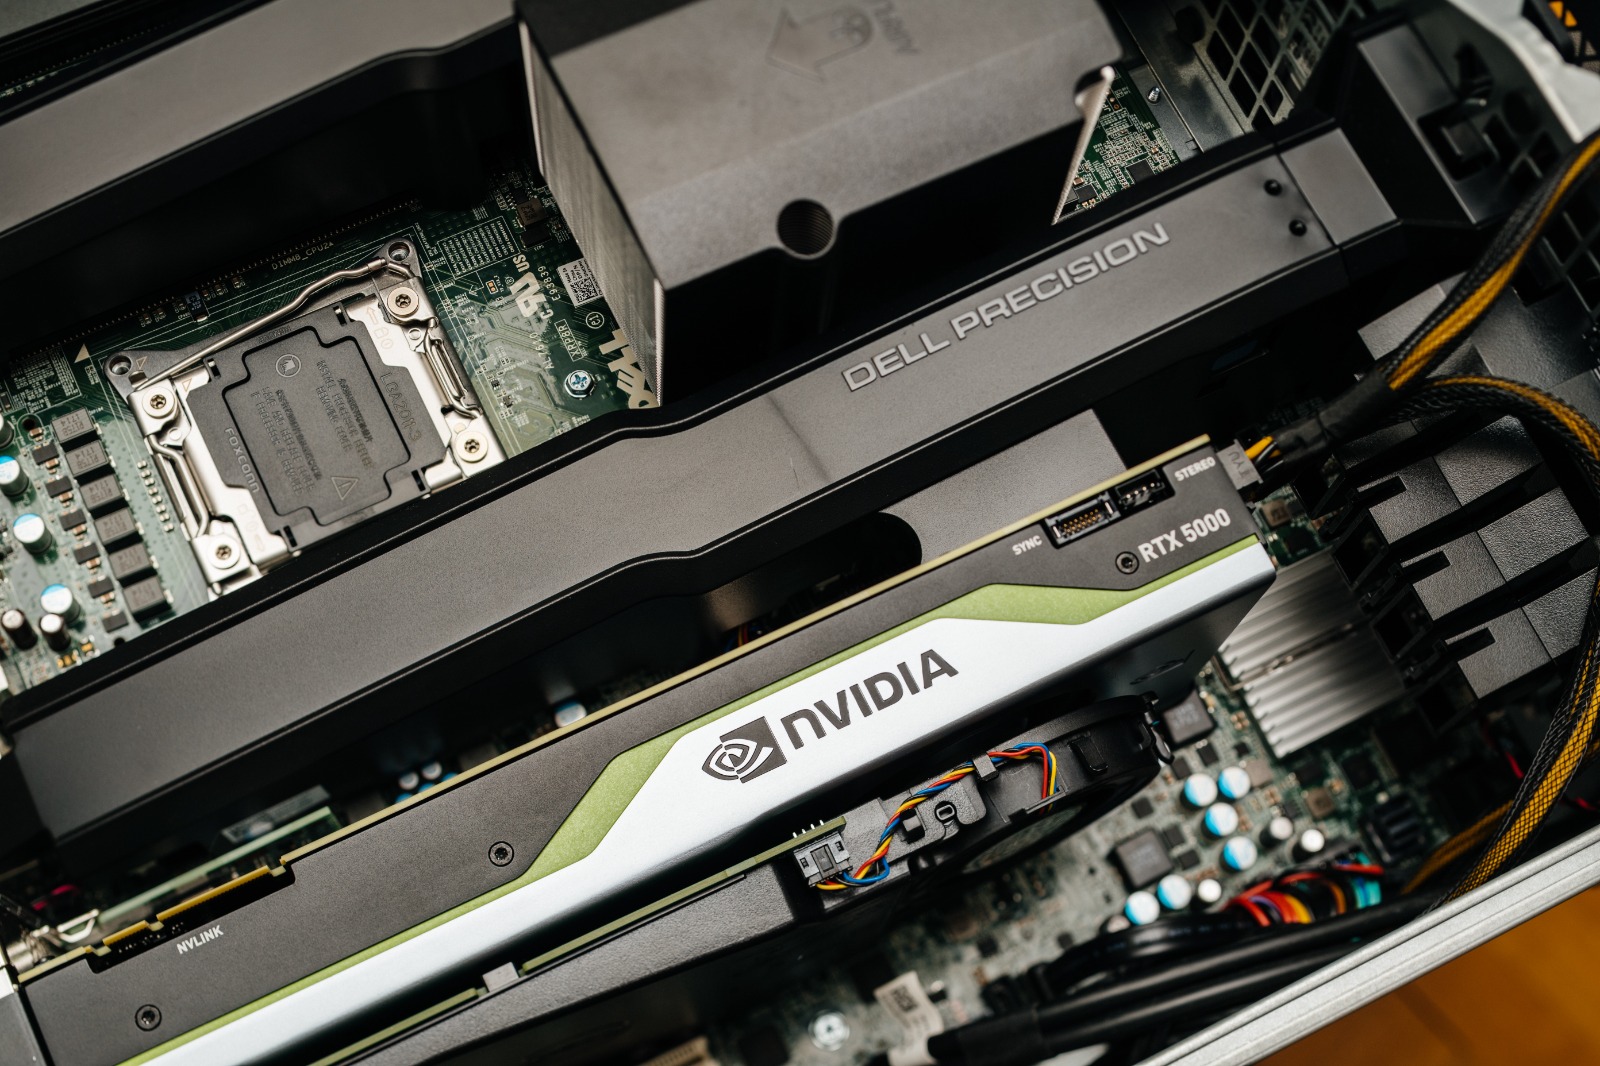 Imagem mostra componentes de computador com o logotipo da NVIDIA em evidência, ressaltando a apresentação da empresa sobre path tracing